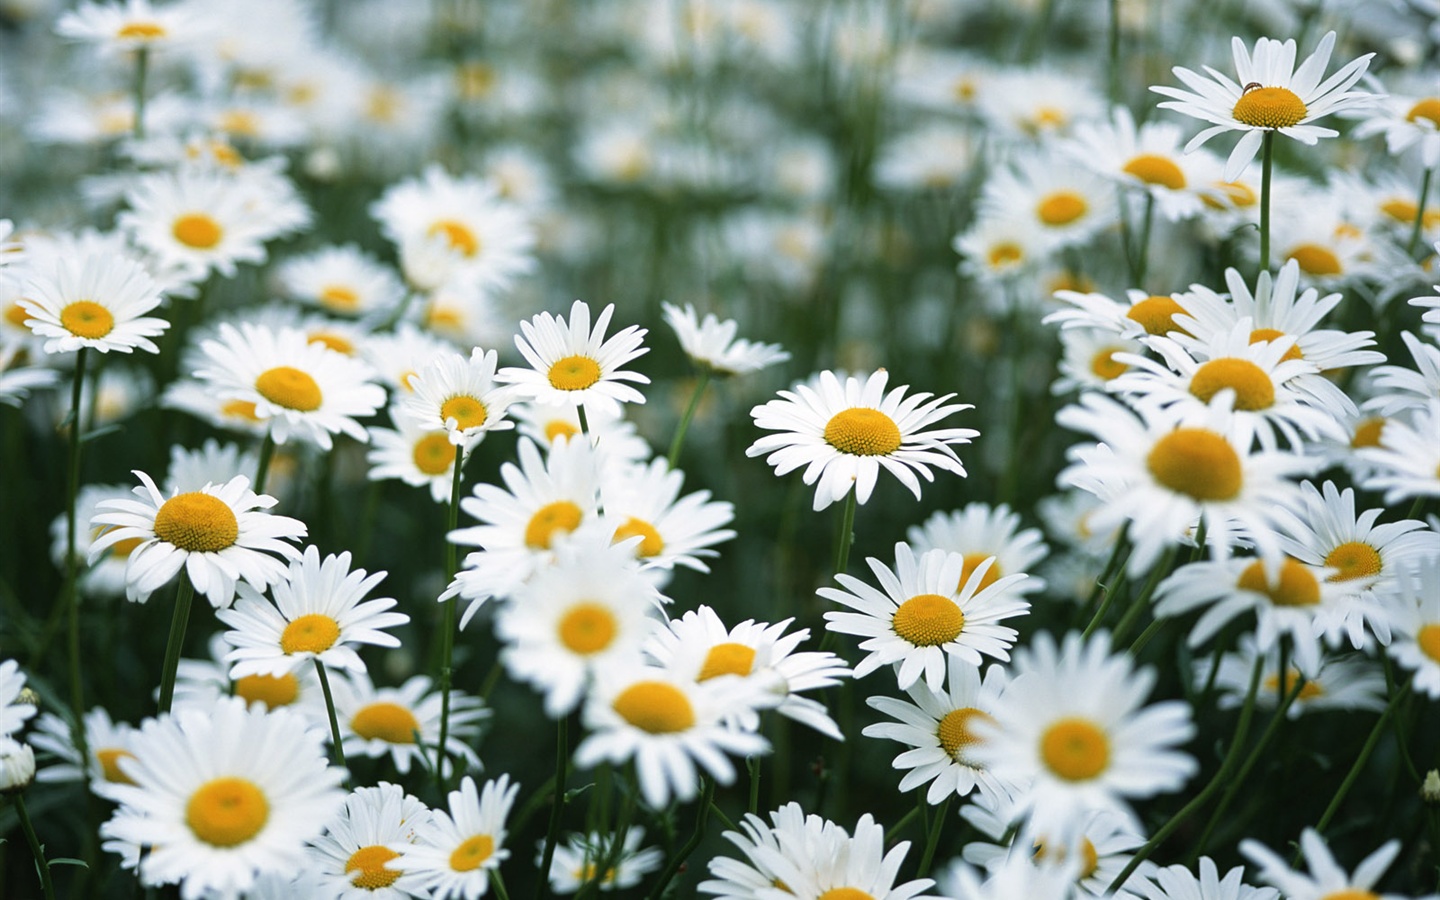 눈같이 흰 꽃 벽지 #17 - 1440x900